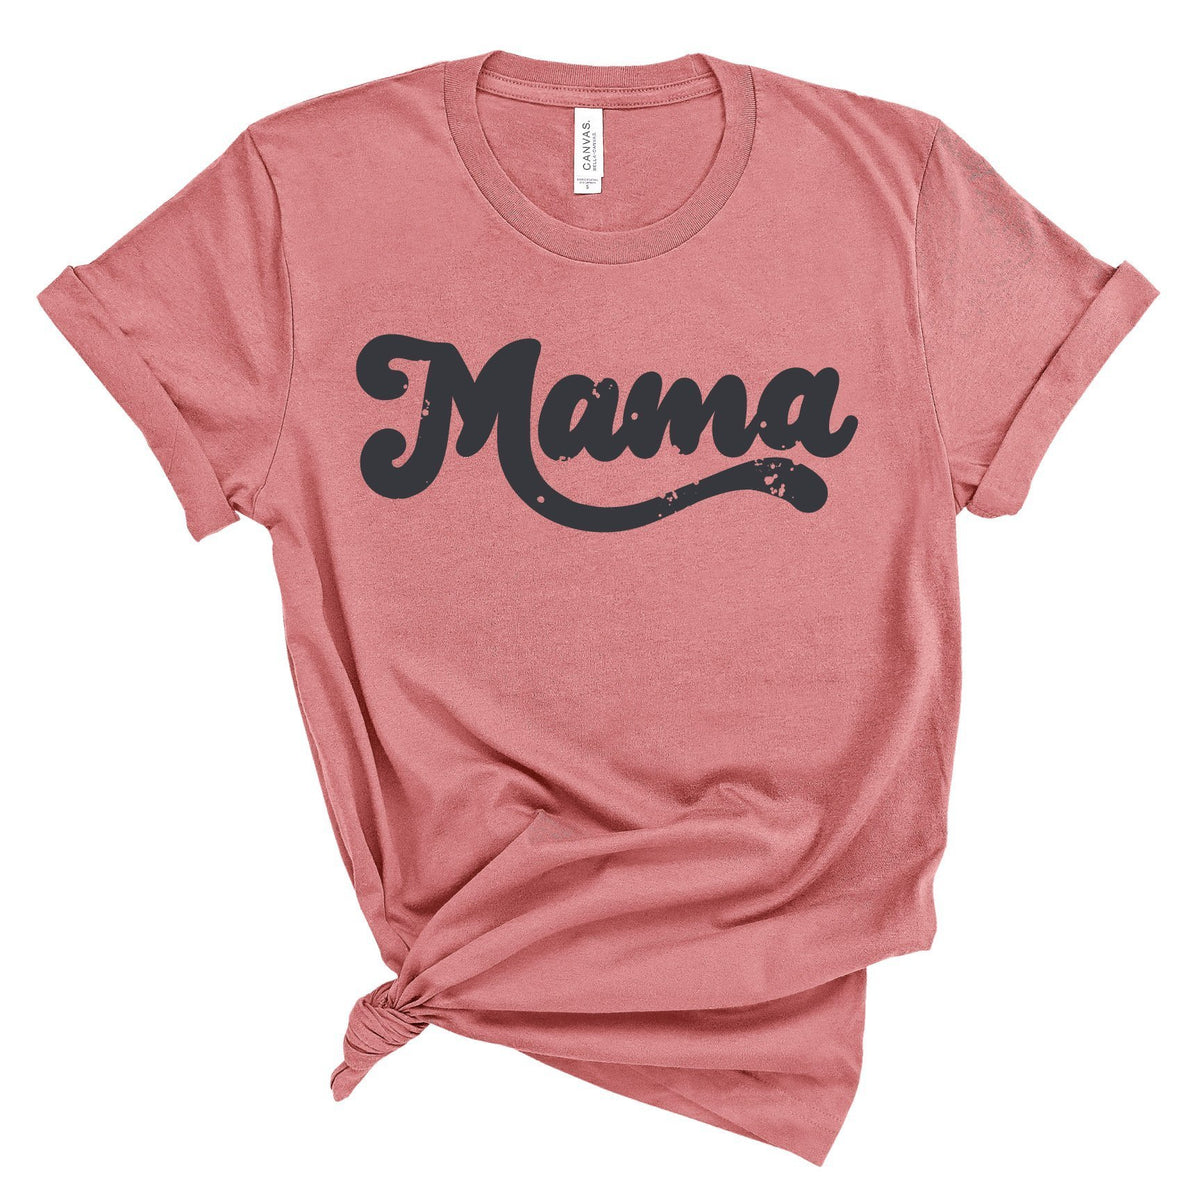 Retro MAMA Tshirt - Cuddle Sleep Dream